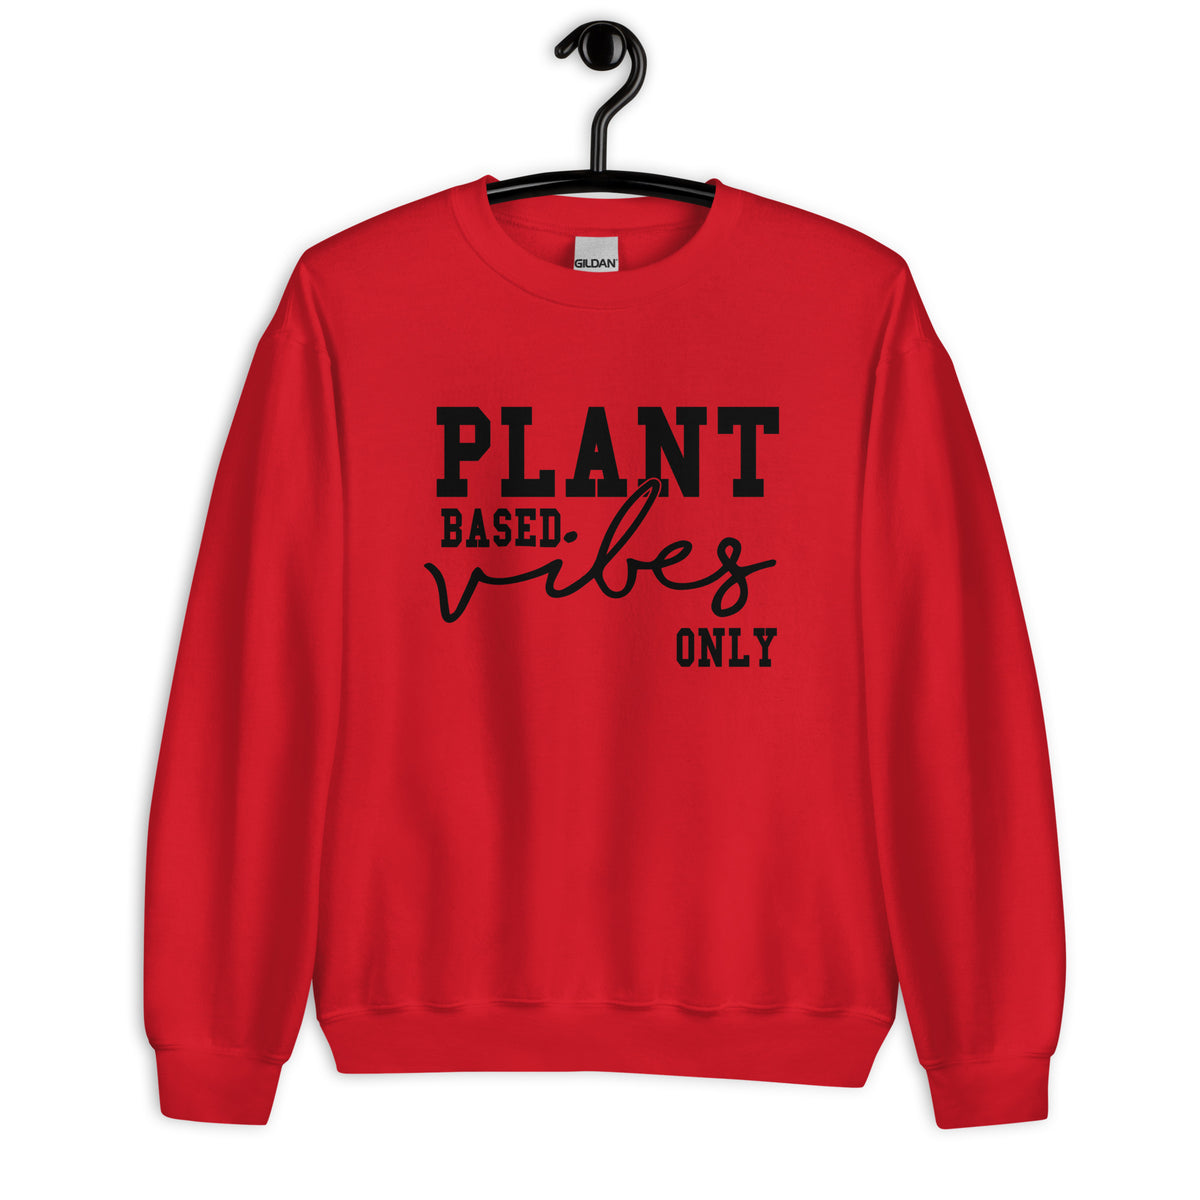 PLANT BASED VIBES Sweatshirt